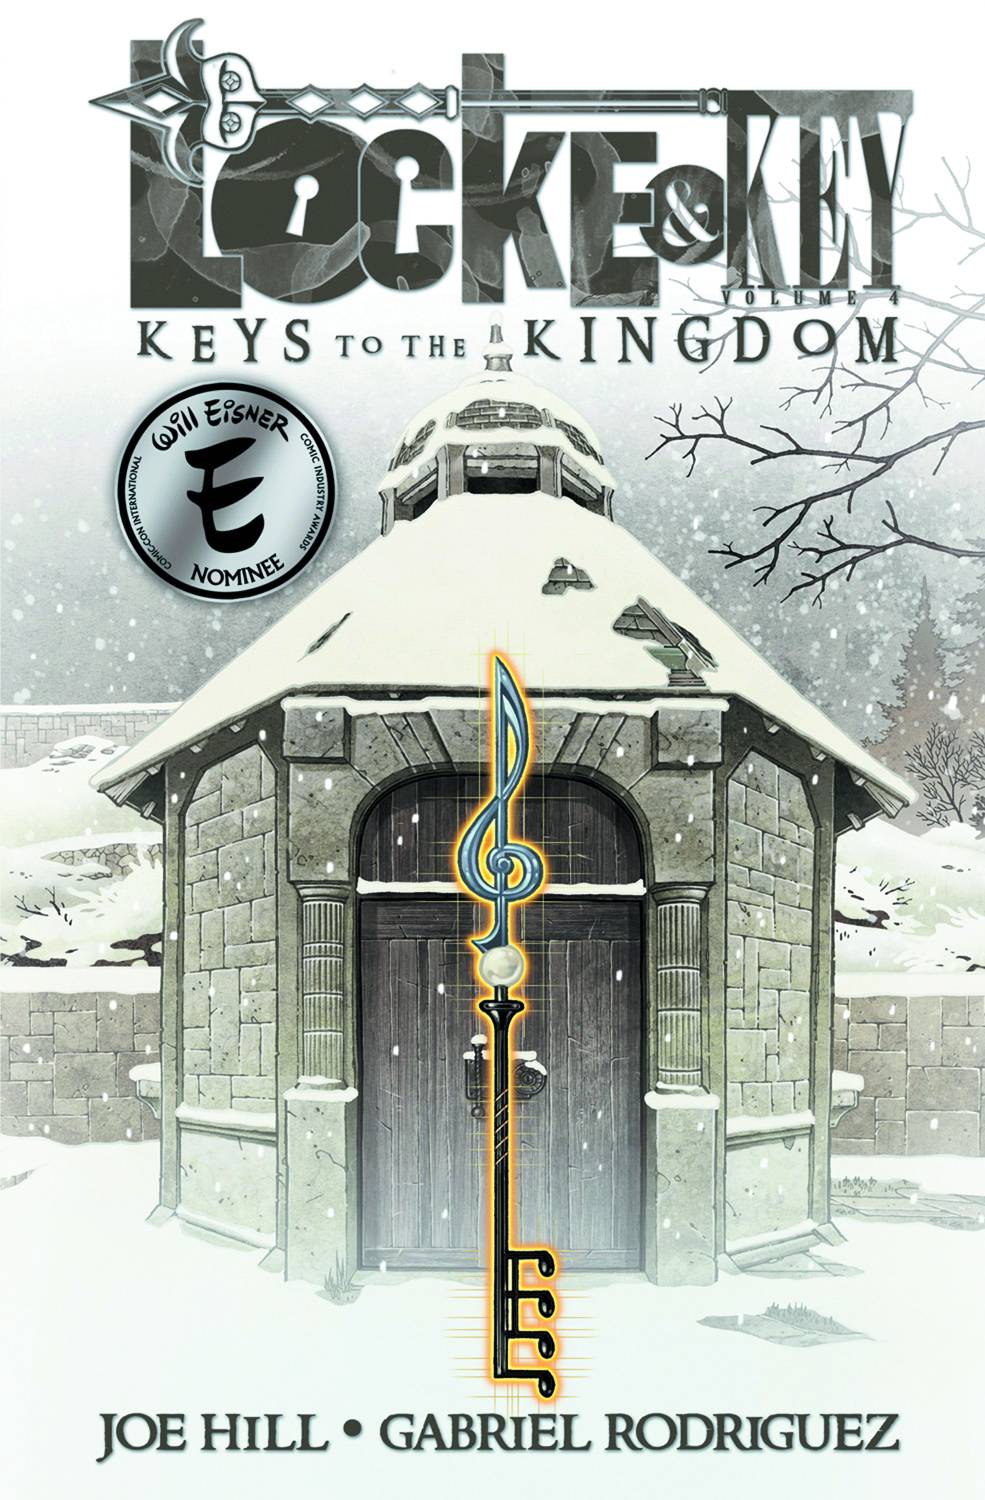 Locke & Key Graphic Novel Volume 4 Keys To The Kingdom